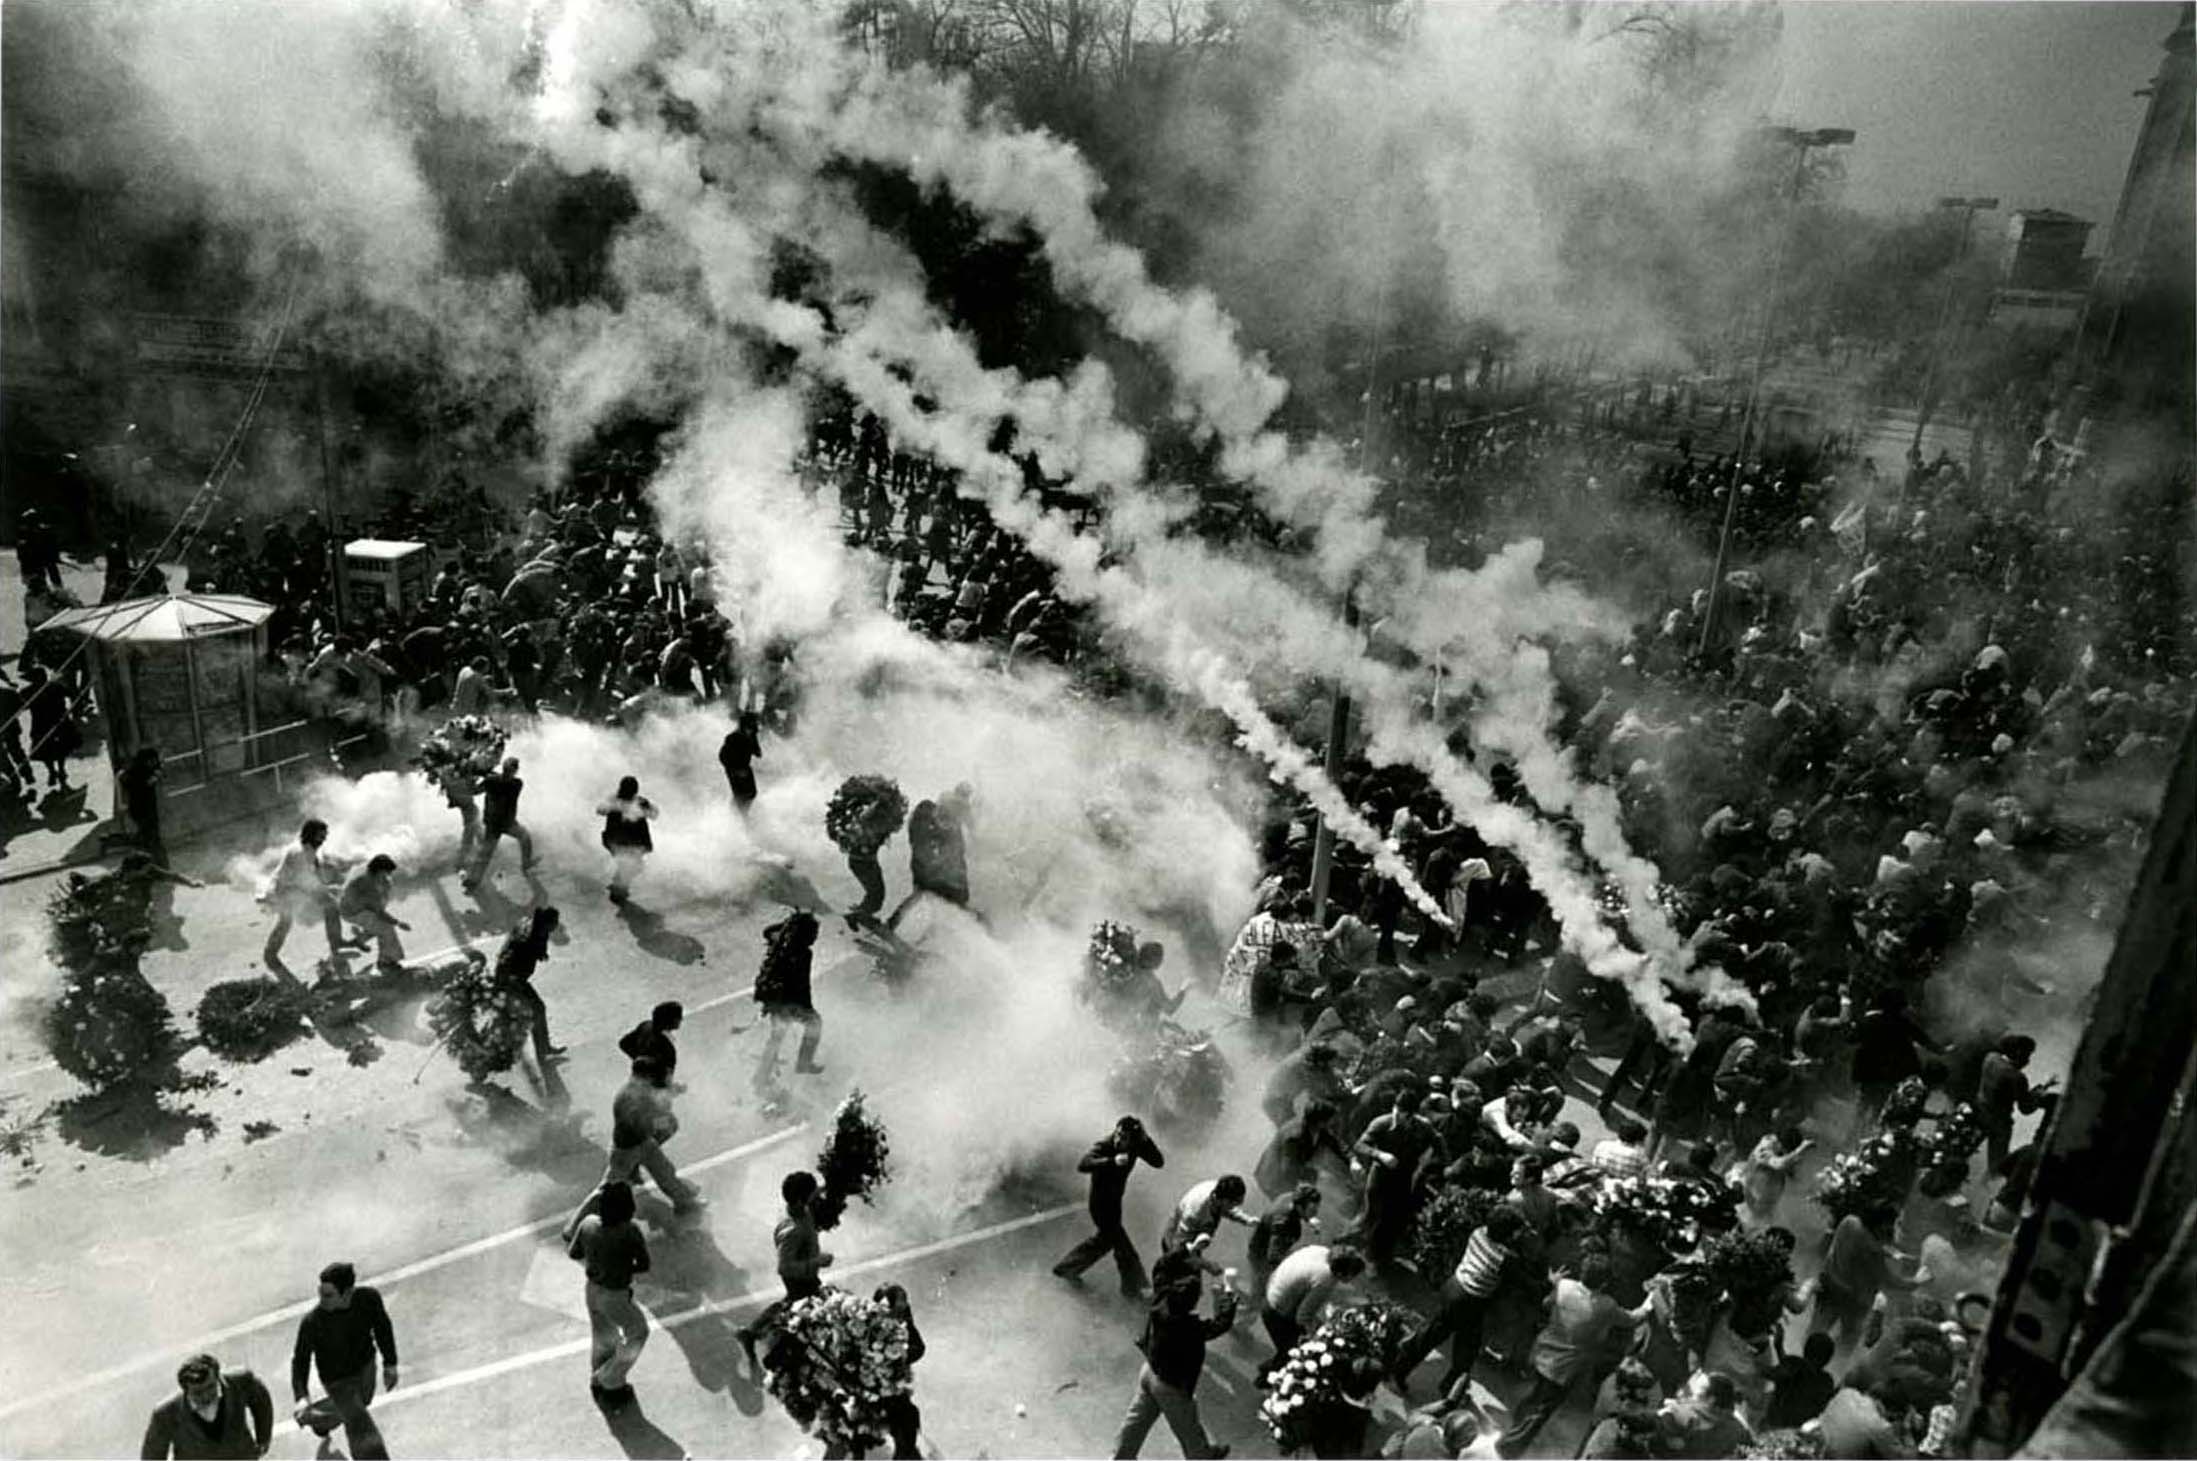 Represión policial tras el funeral de 4 trabajadores en Vitoria (Germán Gallego, 3 marzo 1977)